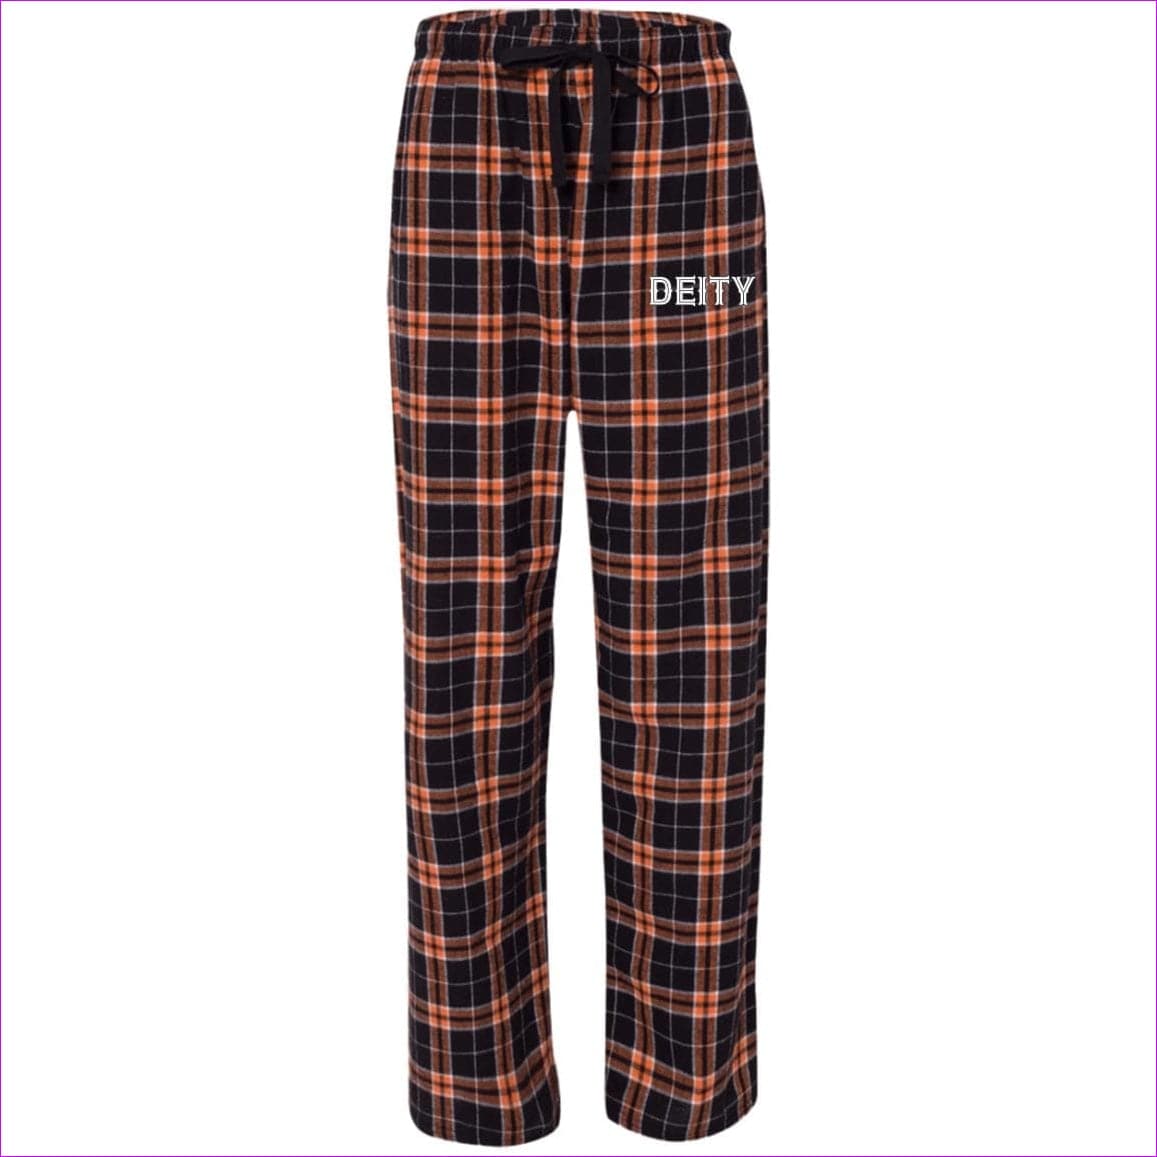 Orange/Black - Deity Flannel Pants - unisex pajamas Pants at TFC&H Co.